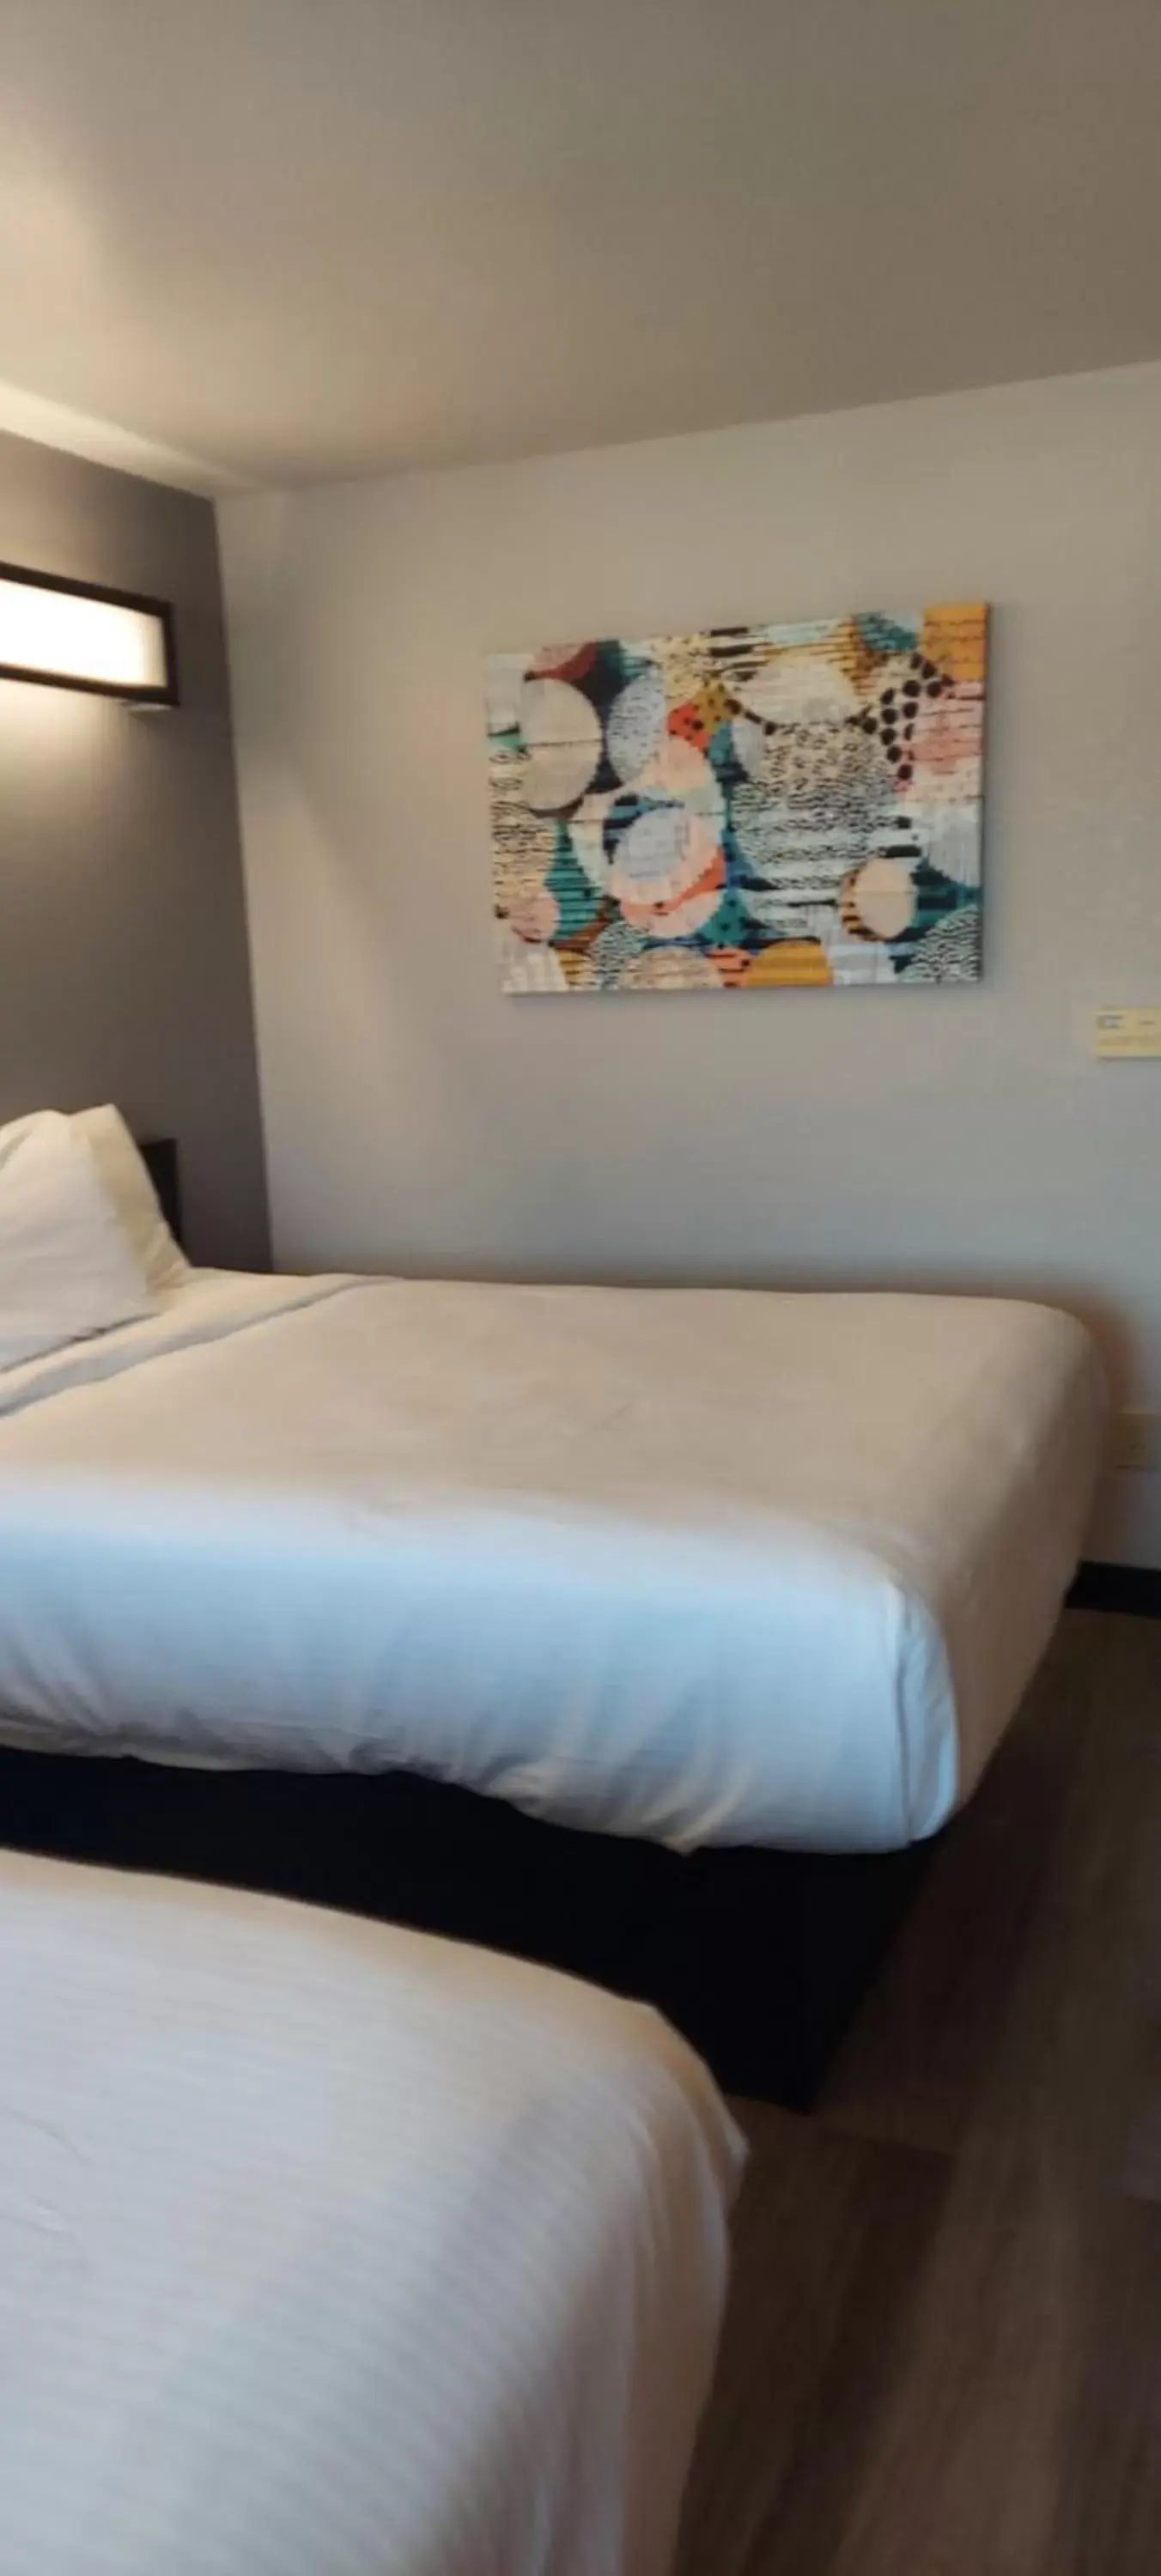 Bed in Microtel Inn & Suites by Wyndham Hoover/Birmingham